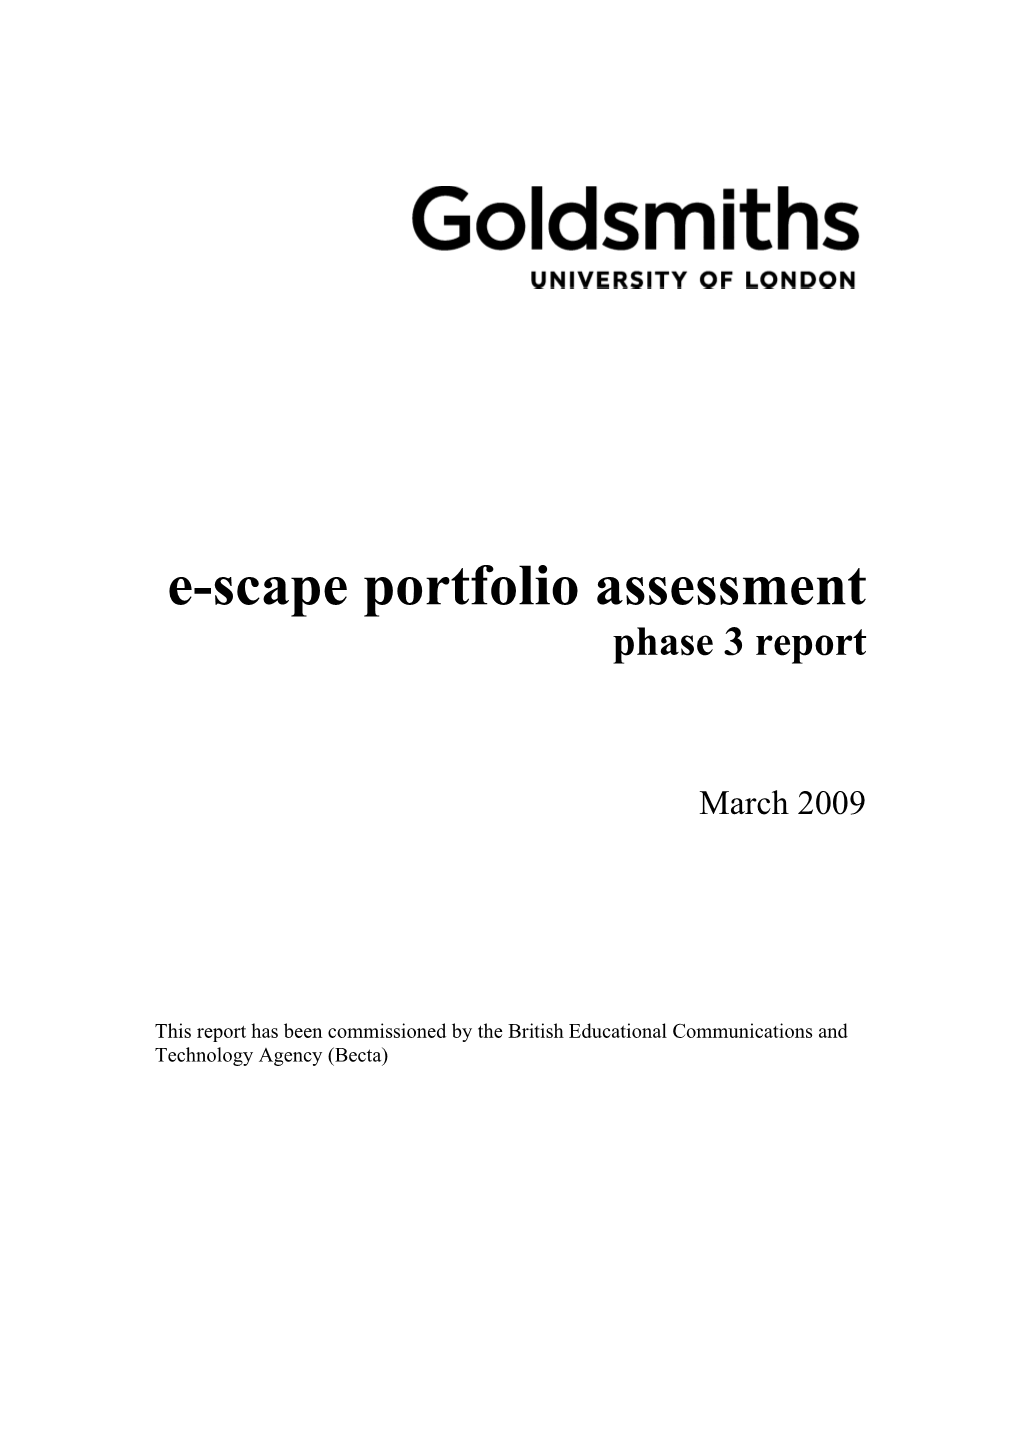 E-Scape Phase 3 Report